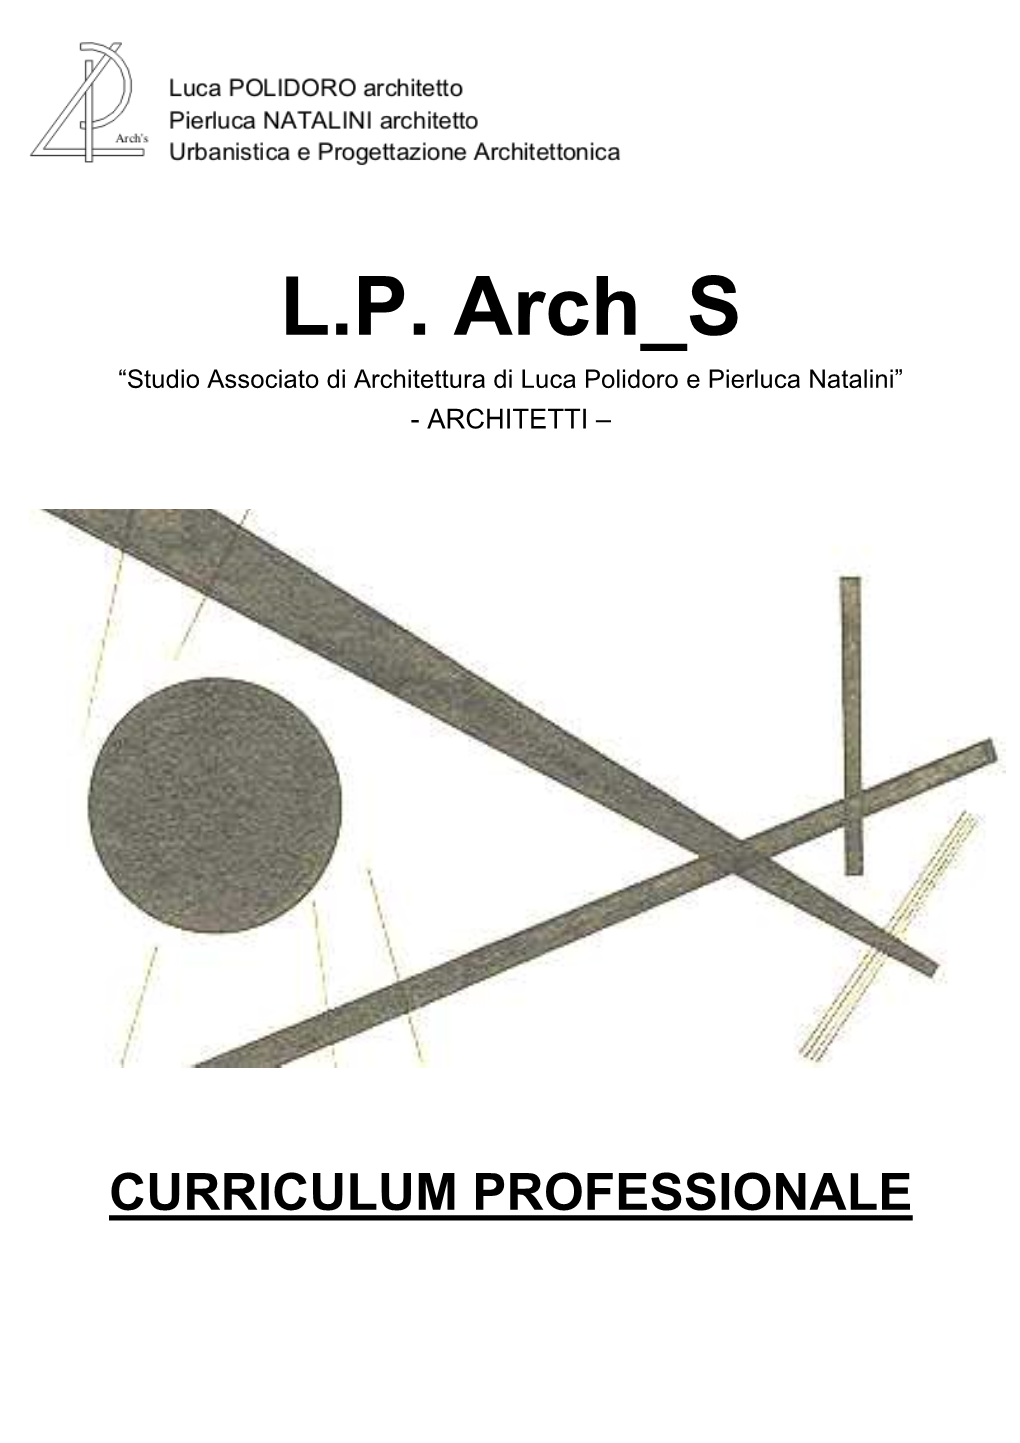 L.P. Arch S “Studio Associato Di Architettura Di Luca Polidoro E Pierluca Natalini” - ARCHITETTI –